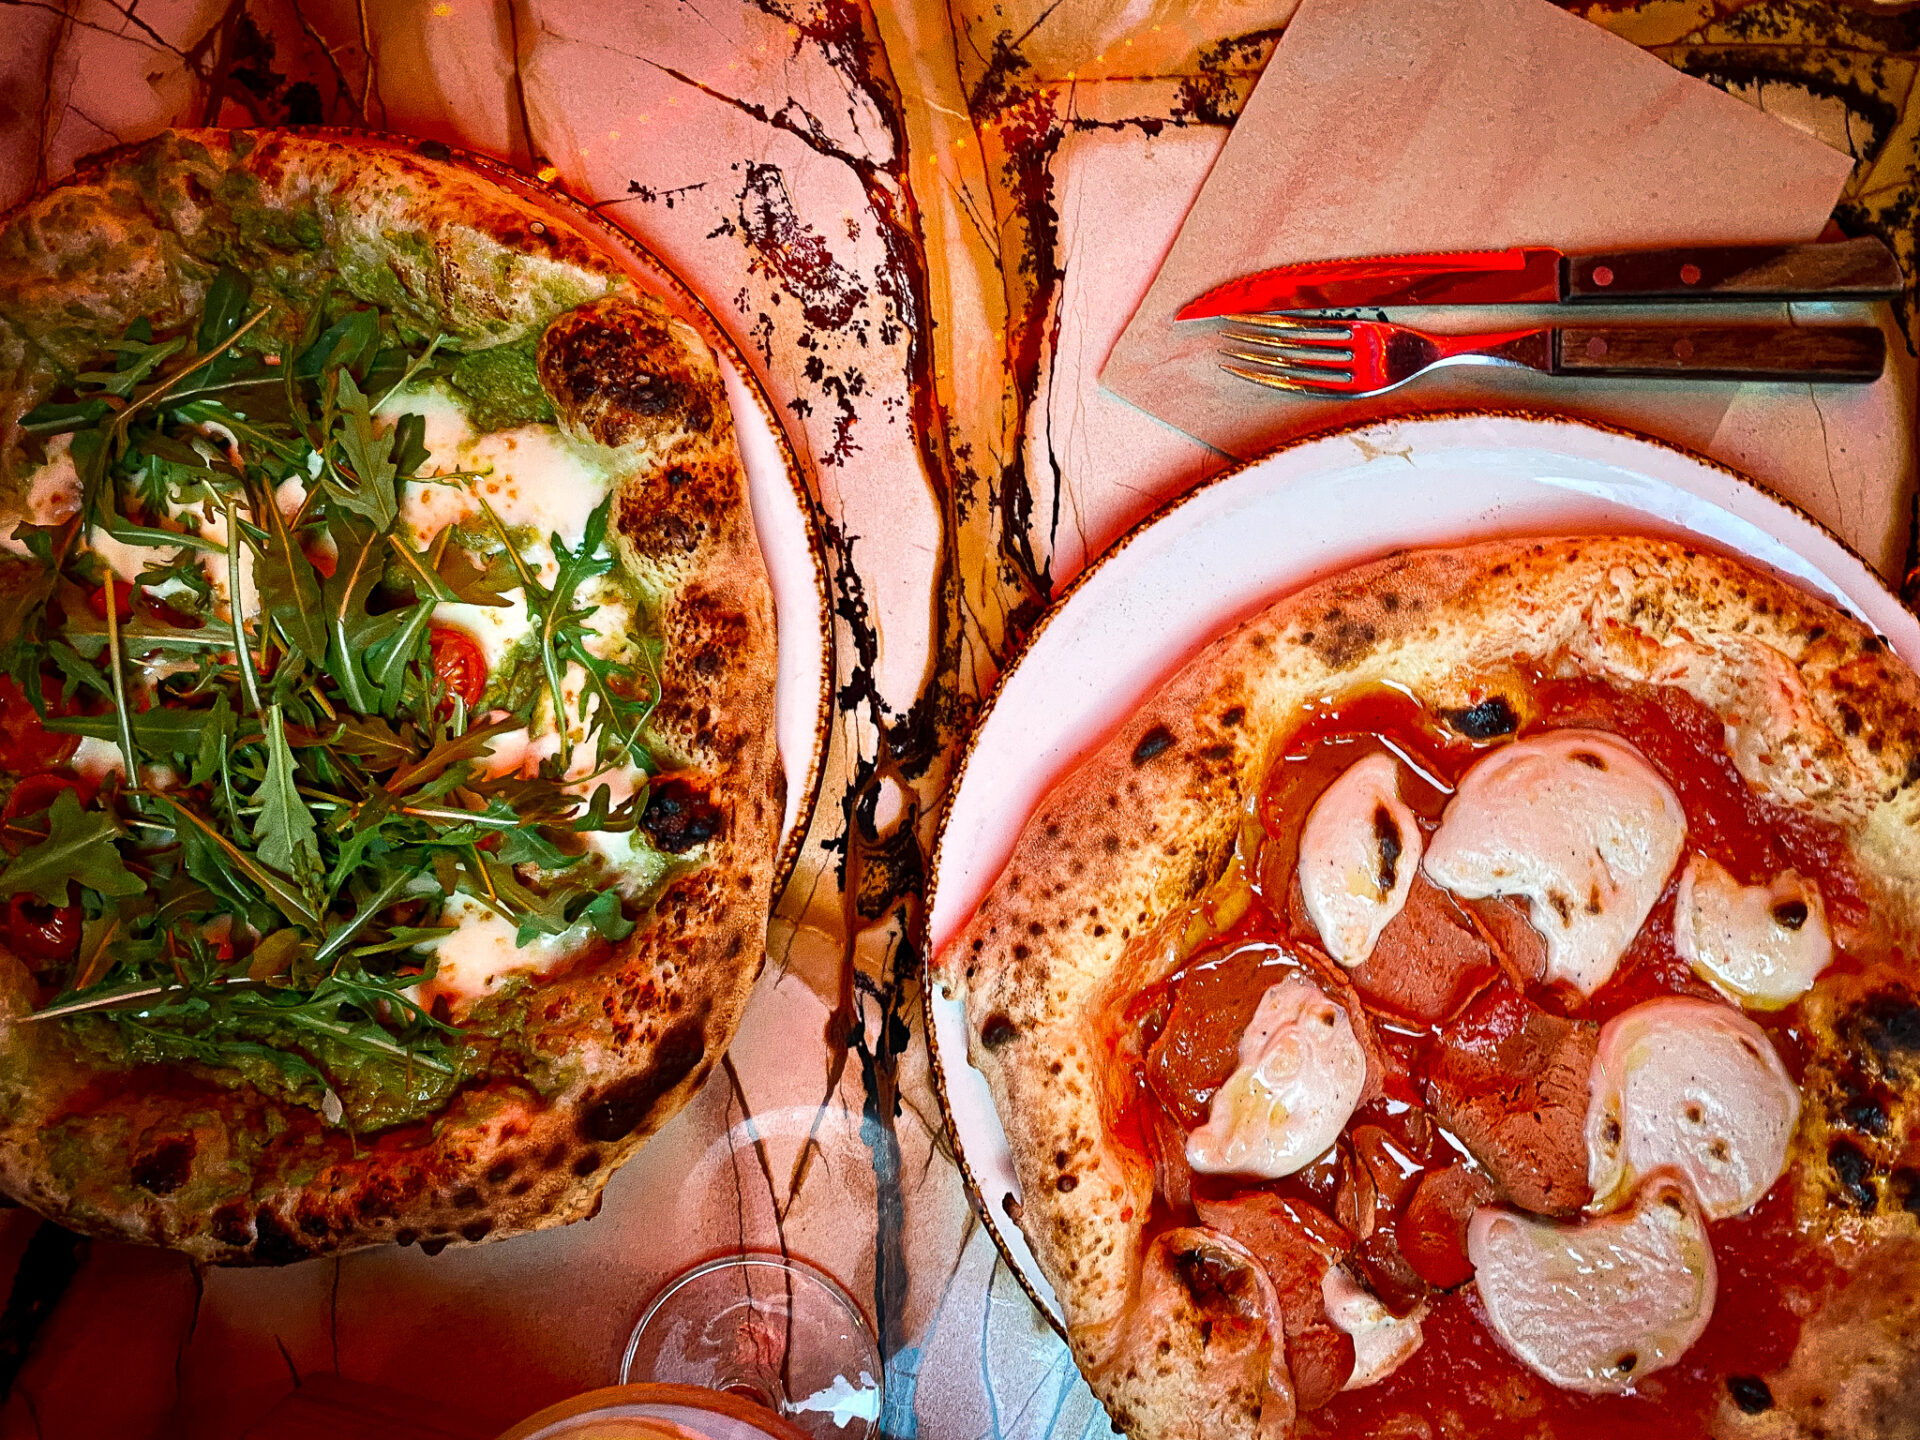 Zwei neapolitanische Pizzen von oben